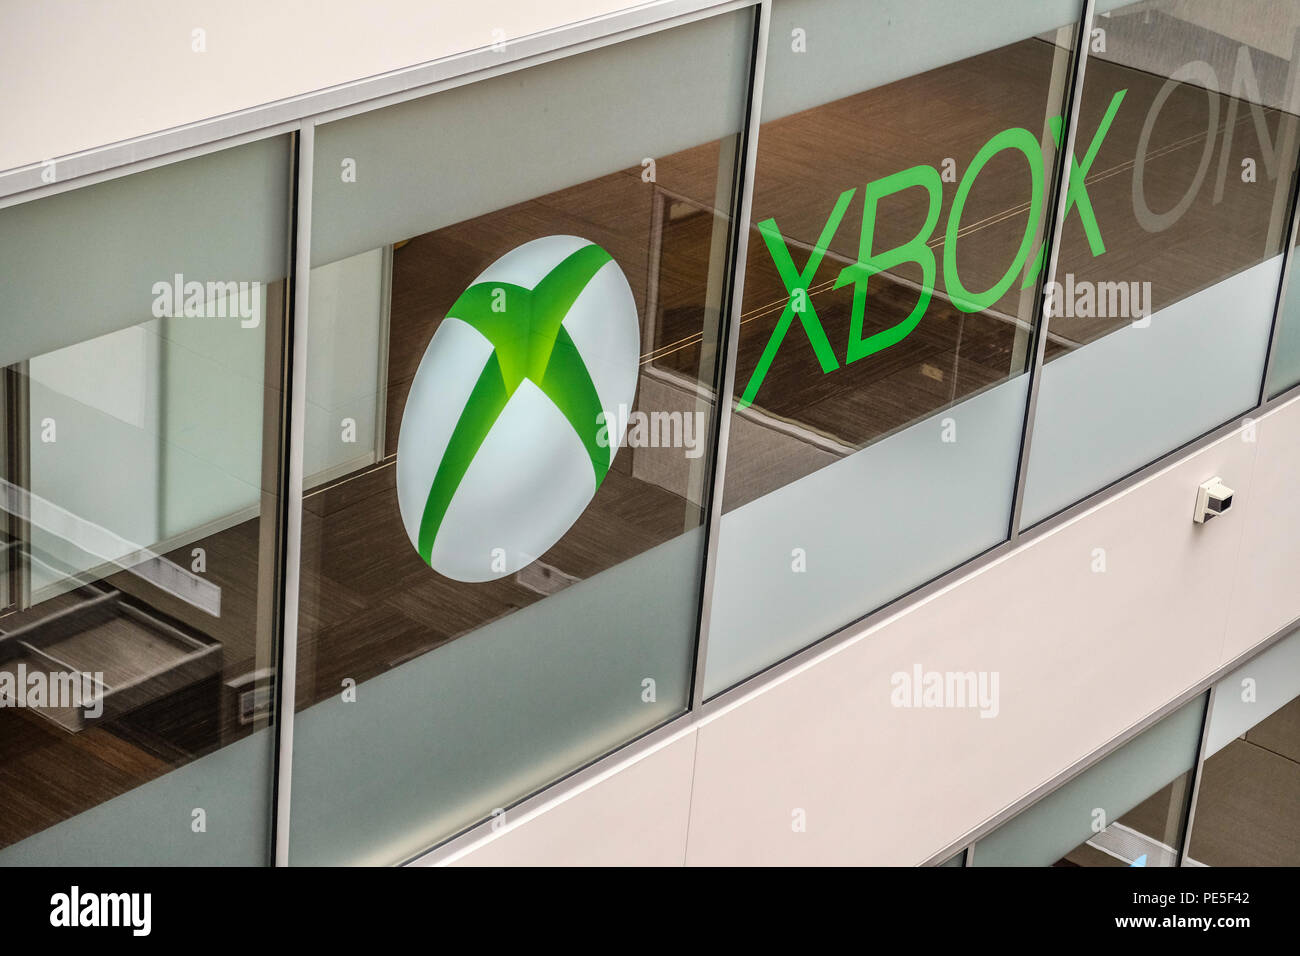 Xbox logo immagini e fotografie stock ad alta risoluzione - Alamy